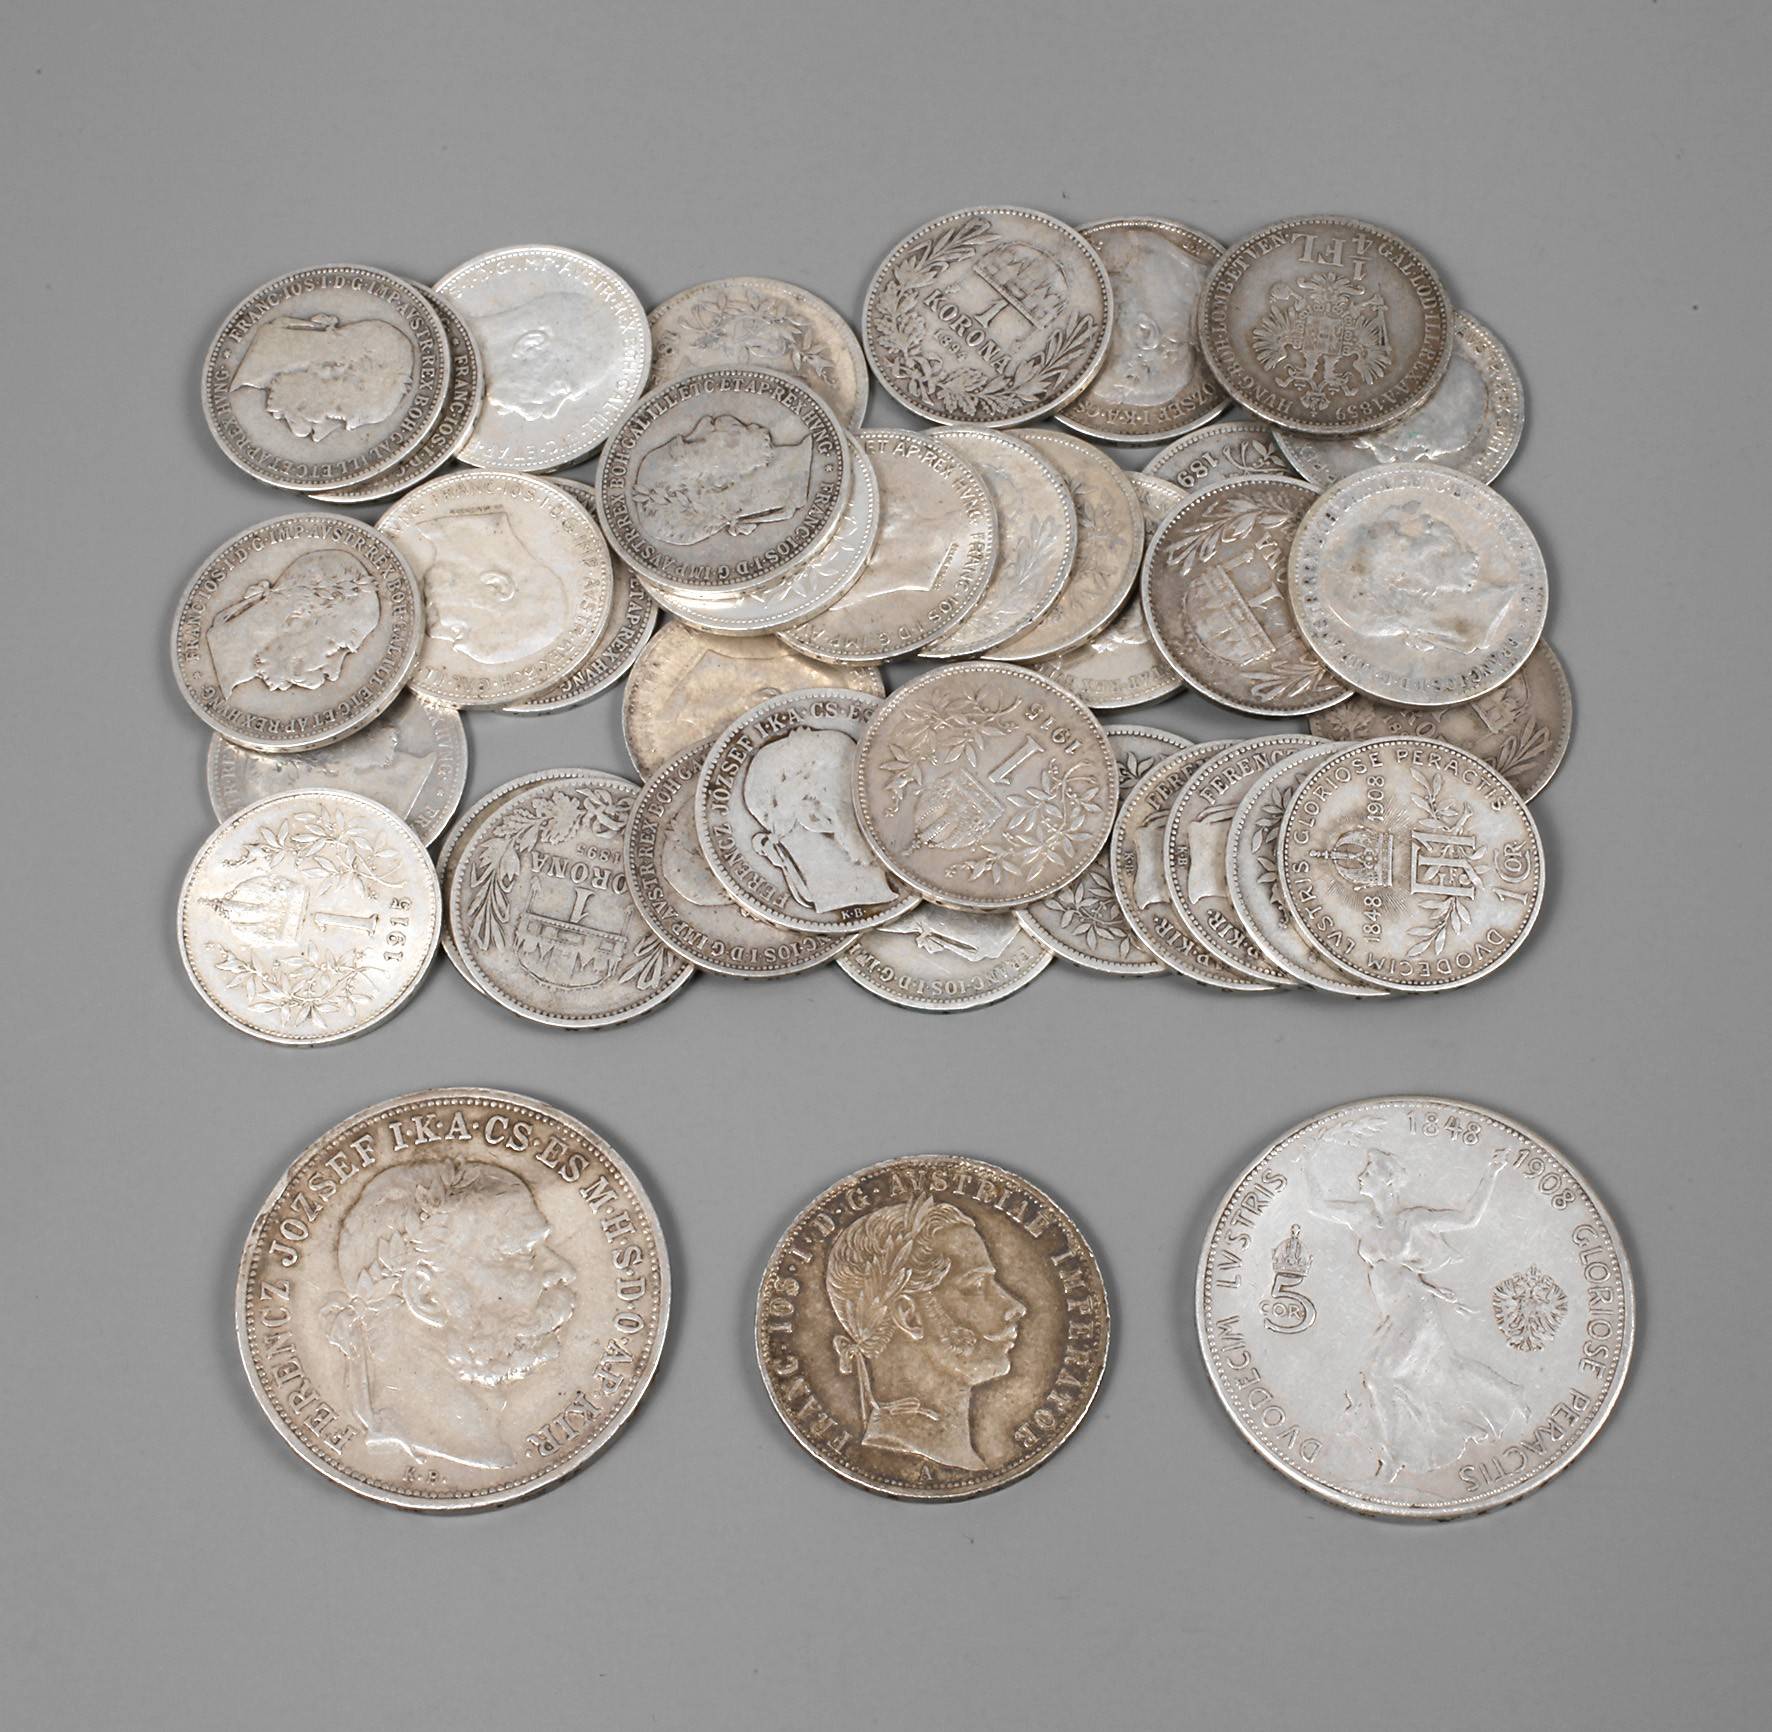 Konvolut Silbermünzen Österreich-Ungarn